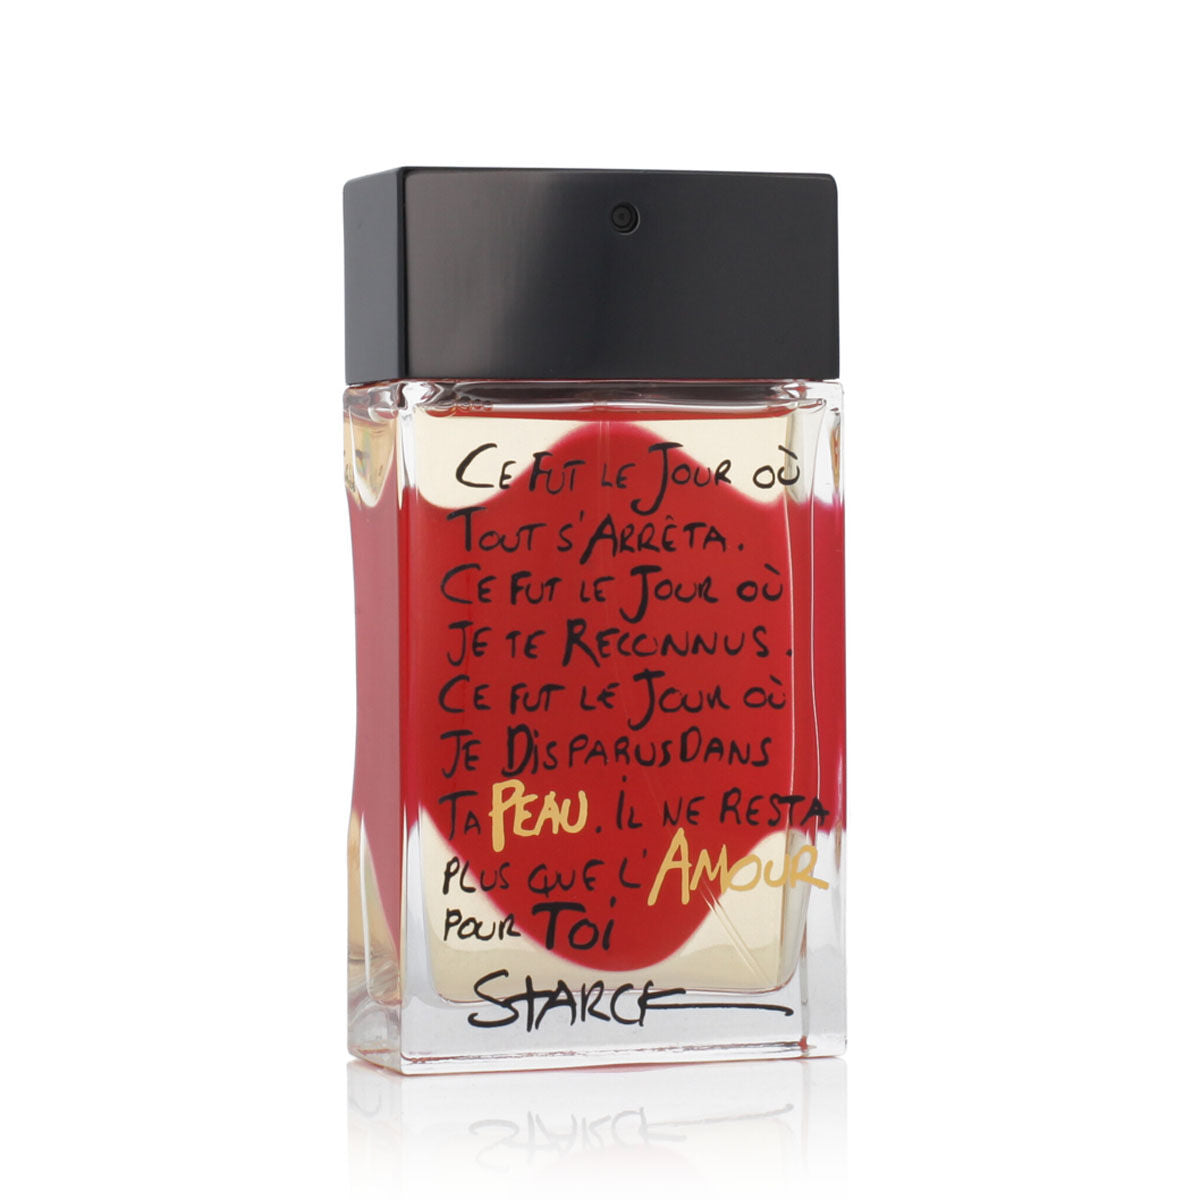 Uniseks Parfum Starck EDP Peau D'amour (90 ml)